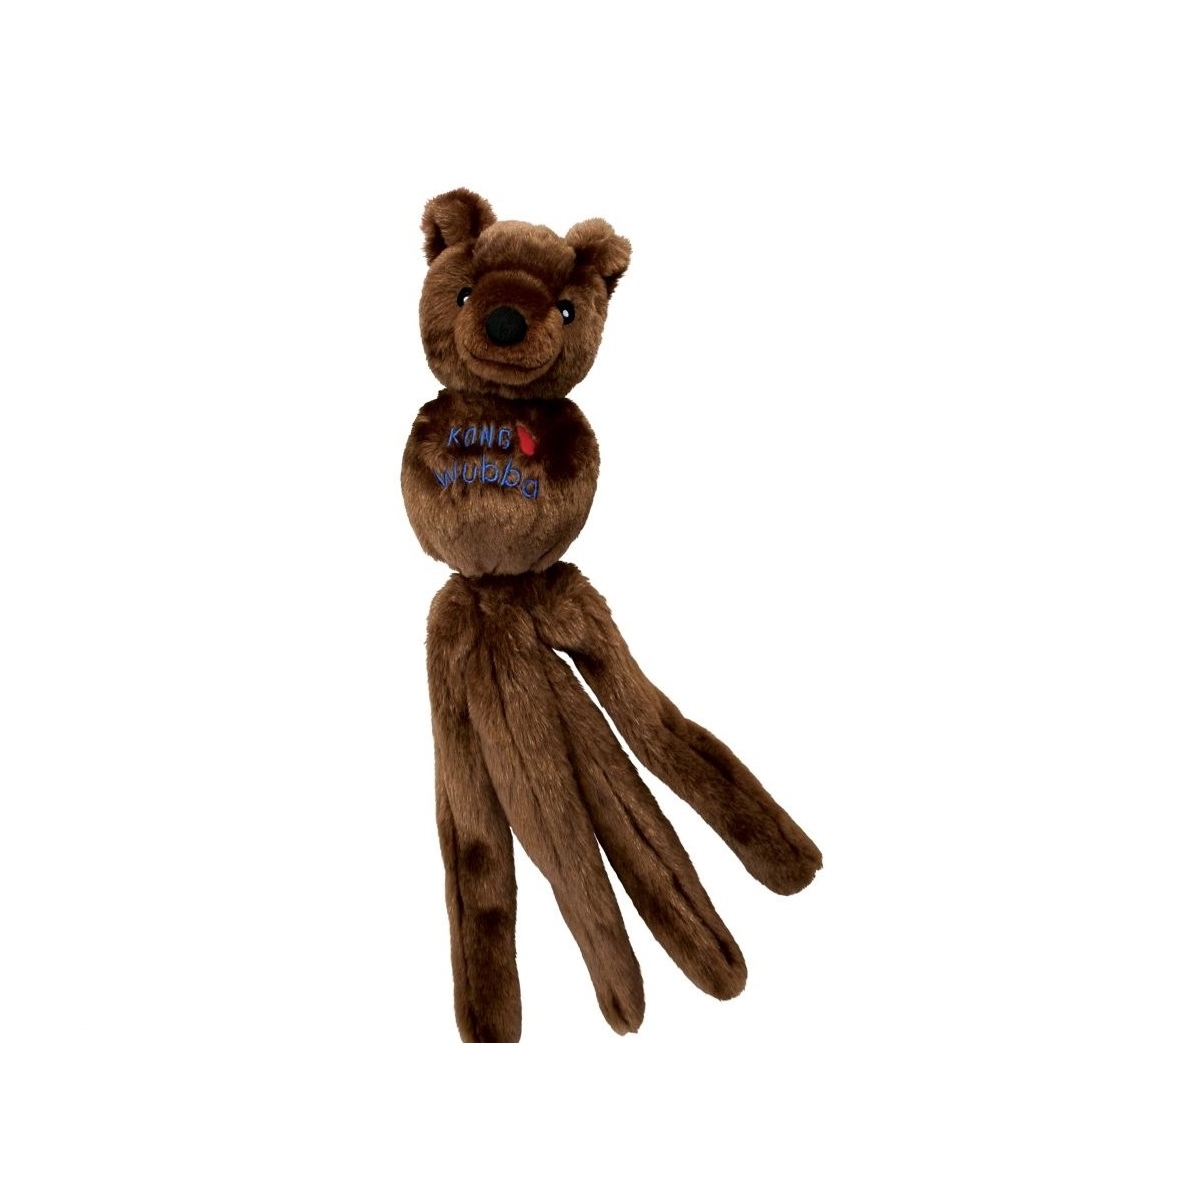 Kong Wubba Friend rotaļlieta suņiem - lācis, izmērs XL